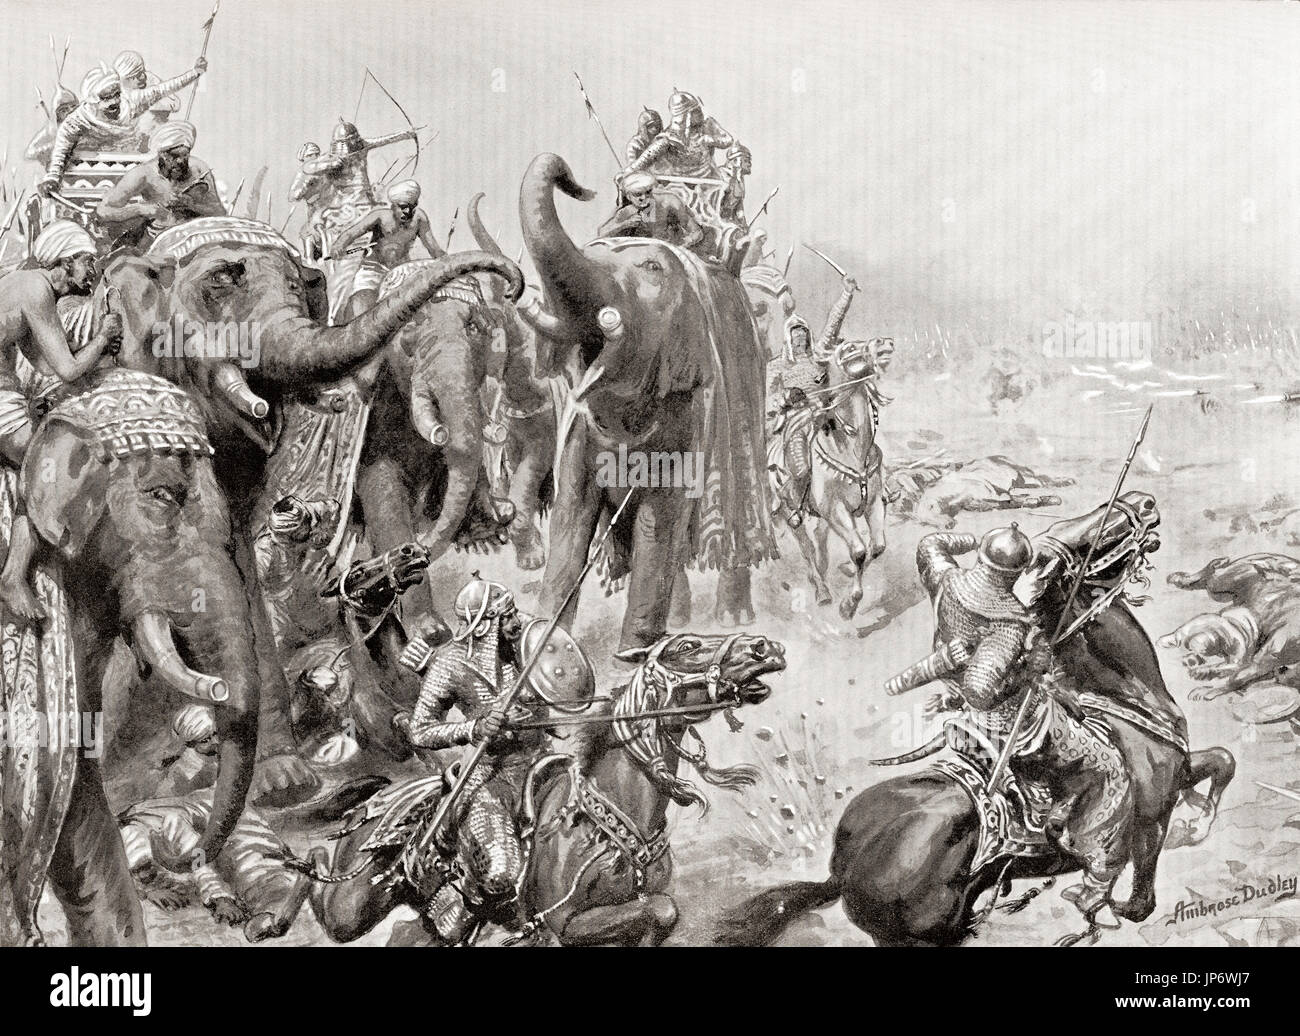 Babur stellt Feld Waffen in der Schlacht von Panipat, Indien im Jahre 1526. Dies war eines der frühesten Schlachten mit Schießpulver Waffen und Feldartillerie in Indien. Nach dem Gemälde von Ambrose Dudley (1867 – 1951).  Hutchinson Geschichte der Nationen veröffentlichte 1915. Stockfoto